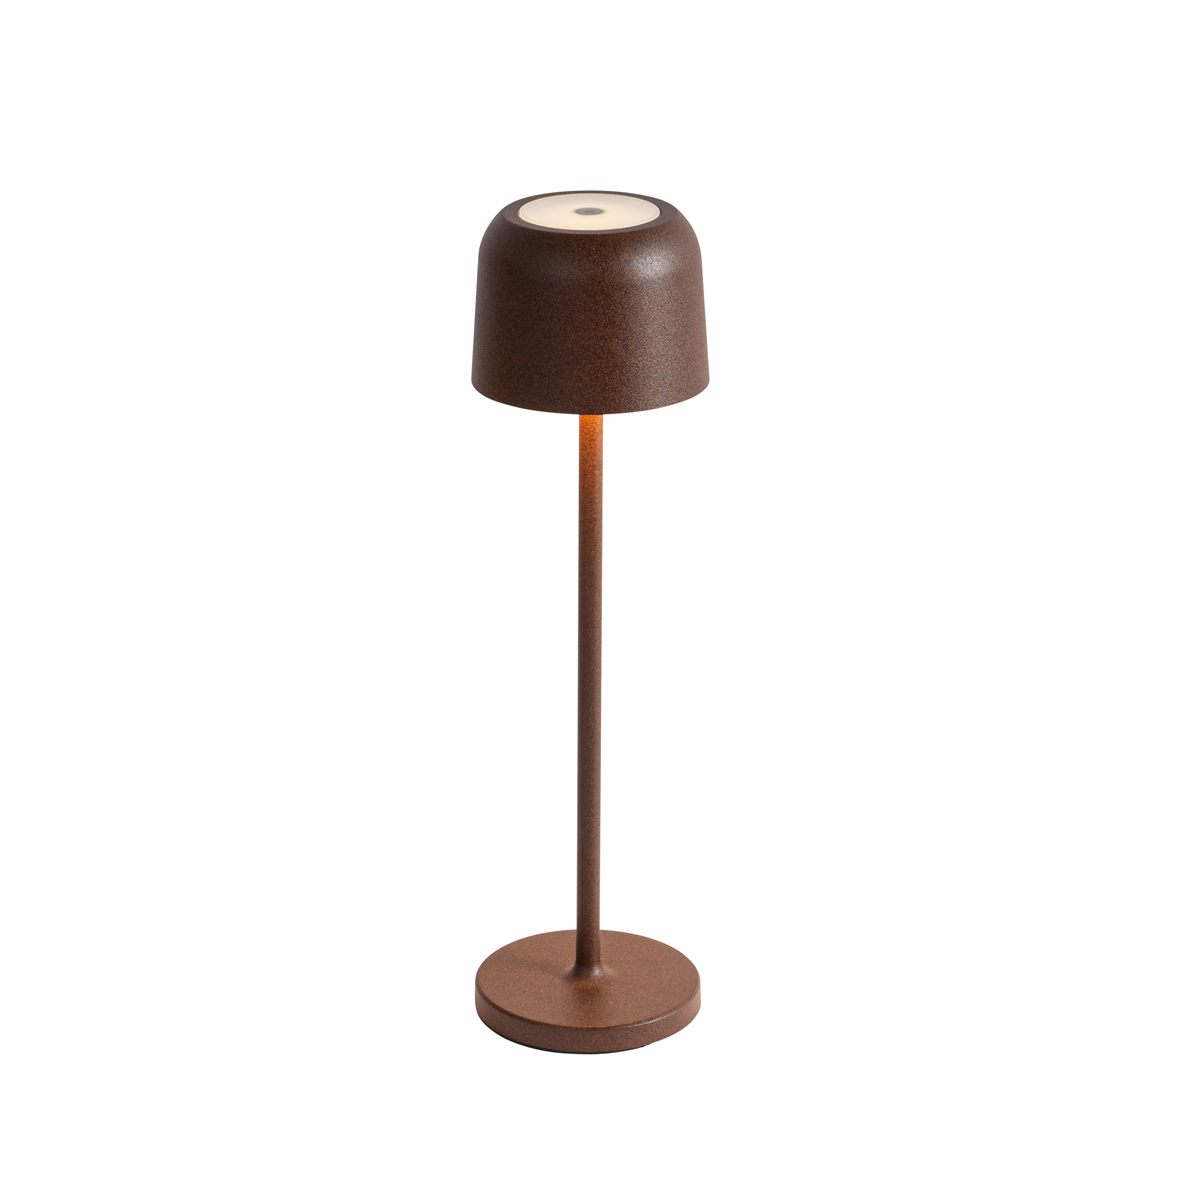 Újratölthető gomba alakú asztali lámpa rozsdabarna töltőállomással - Raika